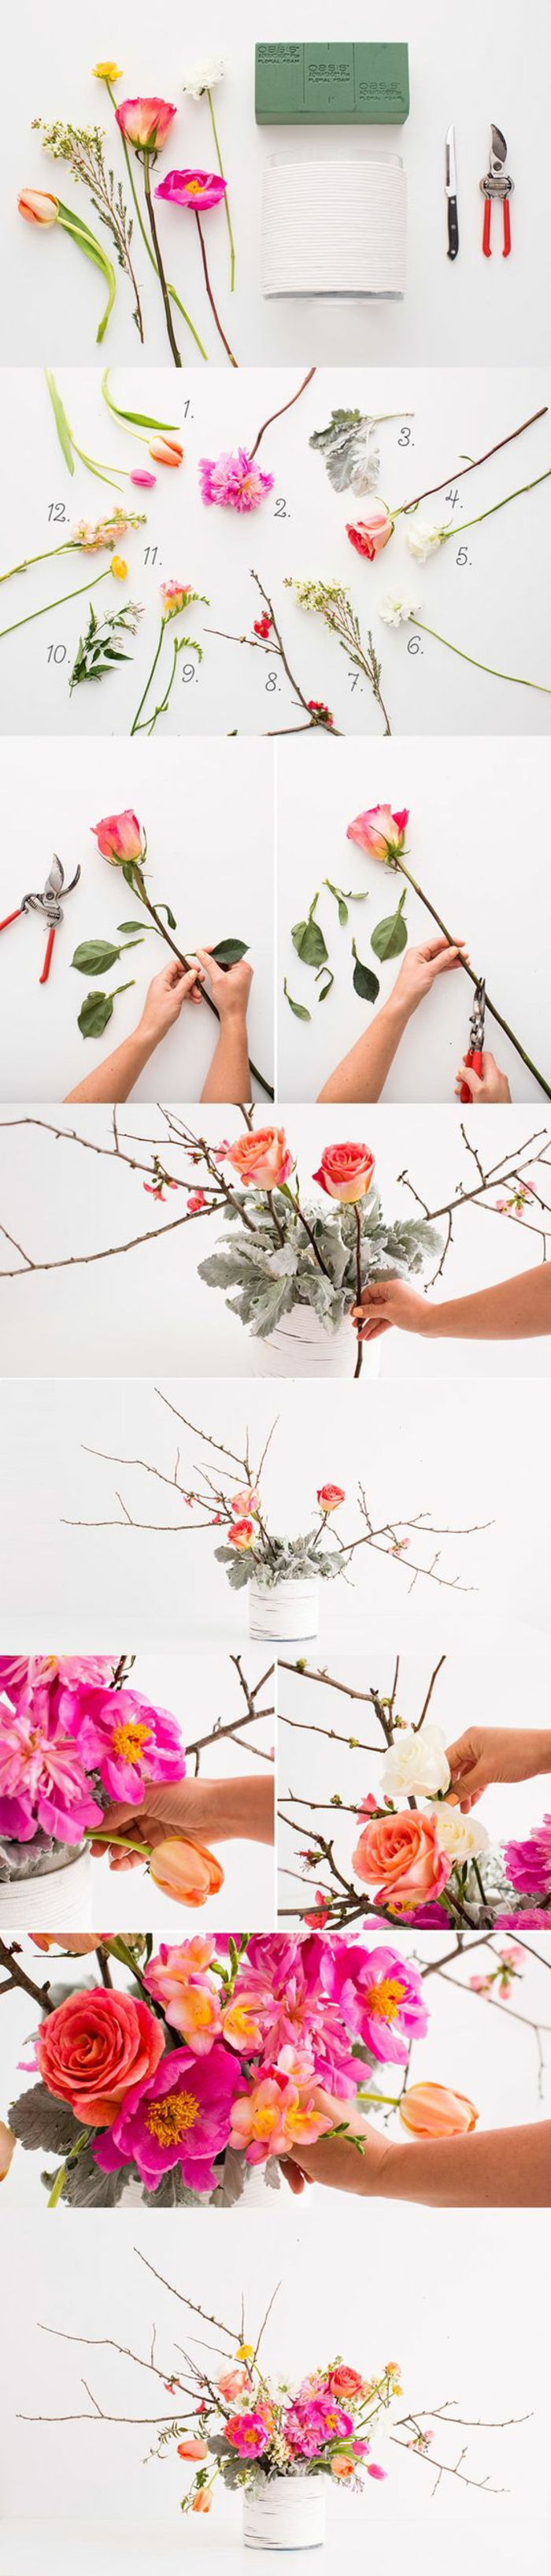 Pomladna dekoracija, bela vaza, roza cvetje, veje, okrasni namizni pribor